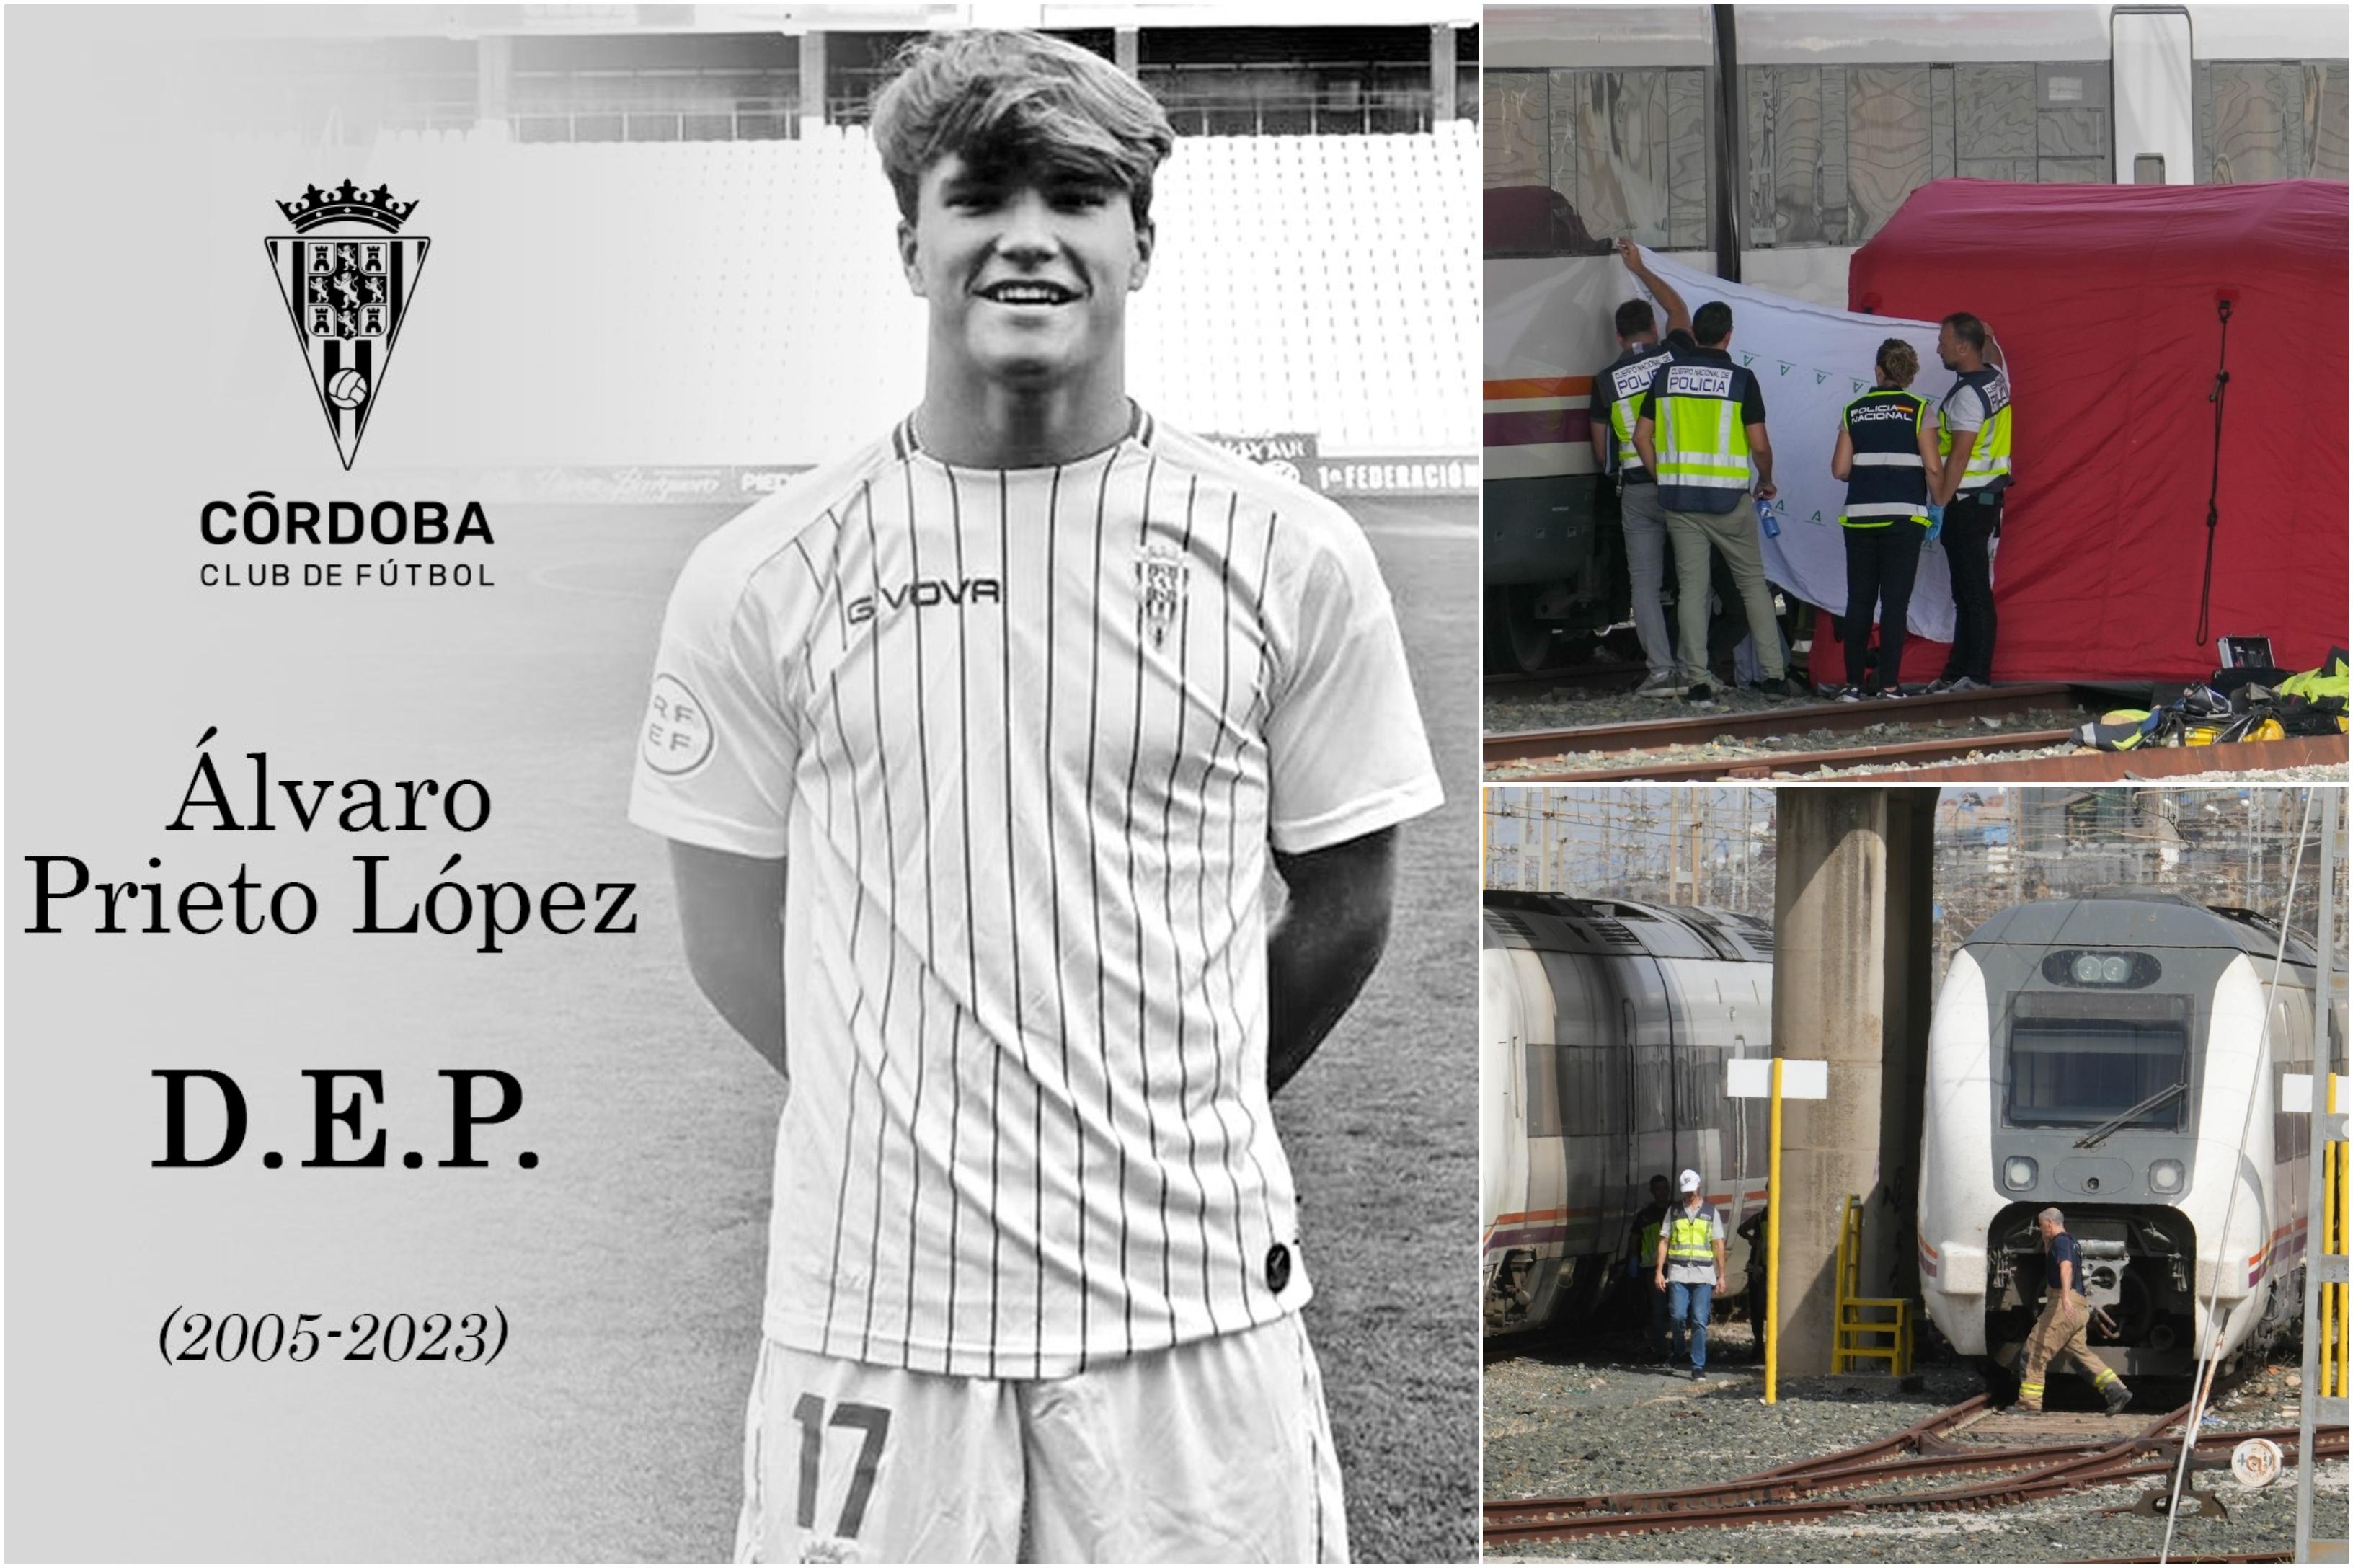 Cazul fotbalistului de 18 ani dispărut de 4 zile, descoperit mort în timpul unei emisiuni live la TV. Cadavrul lui se afla lângă un tren dezafectat, în Spania